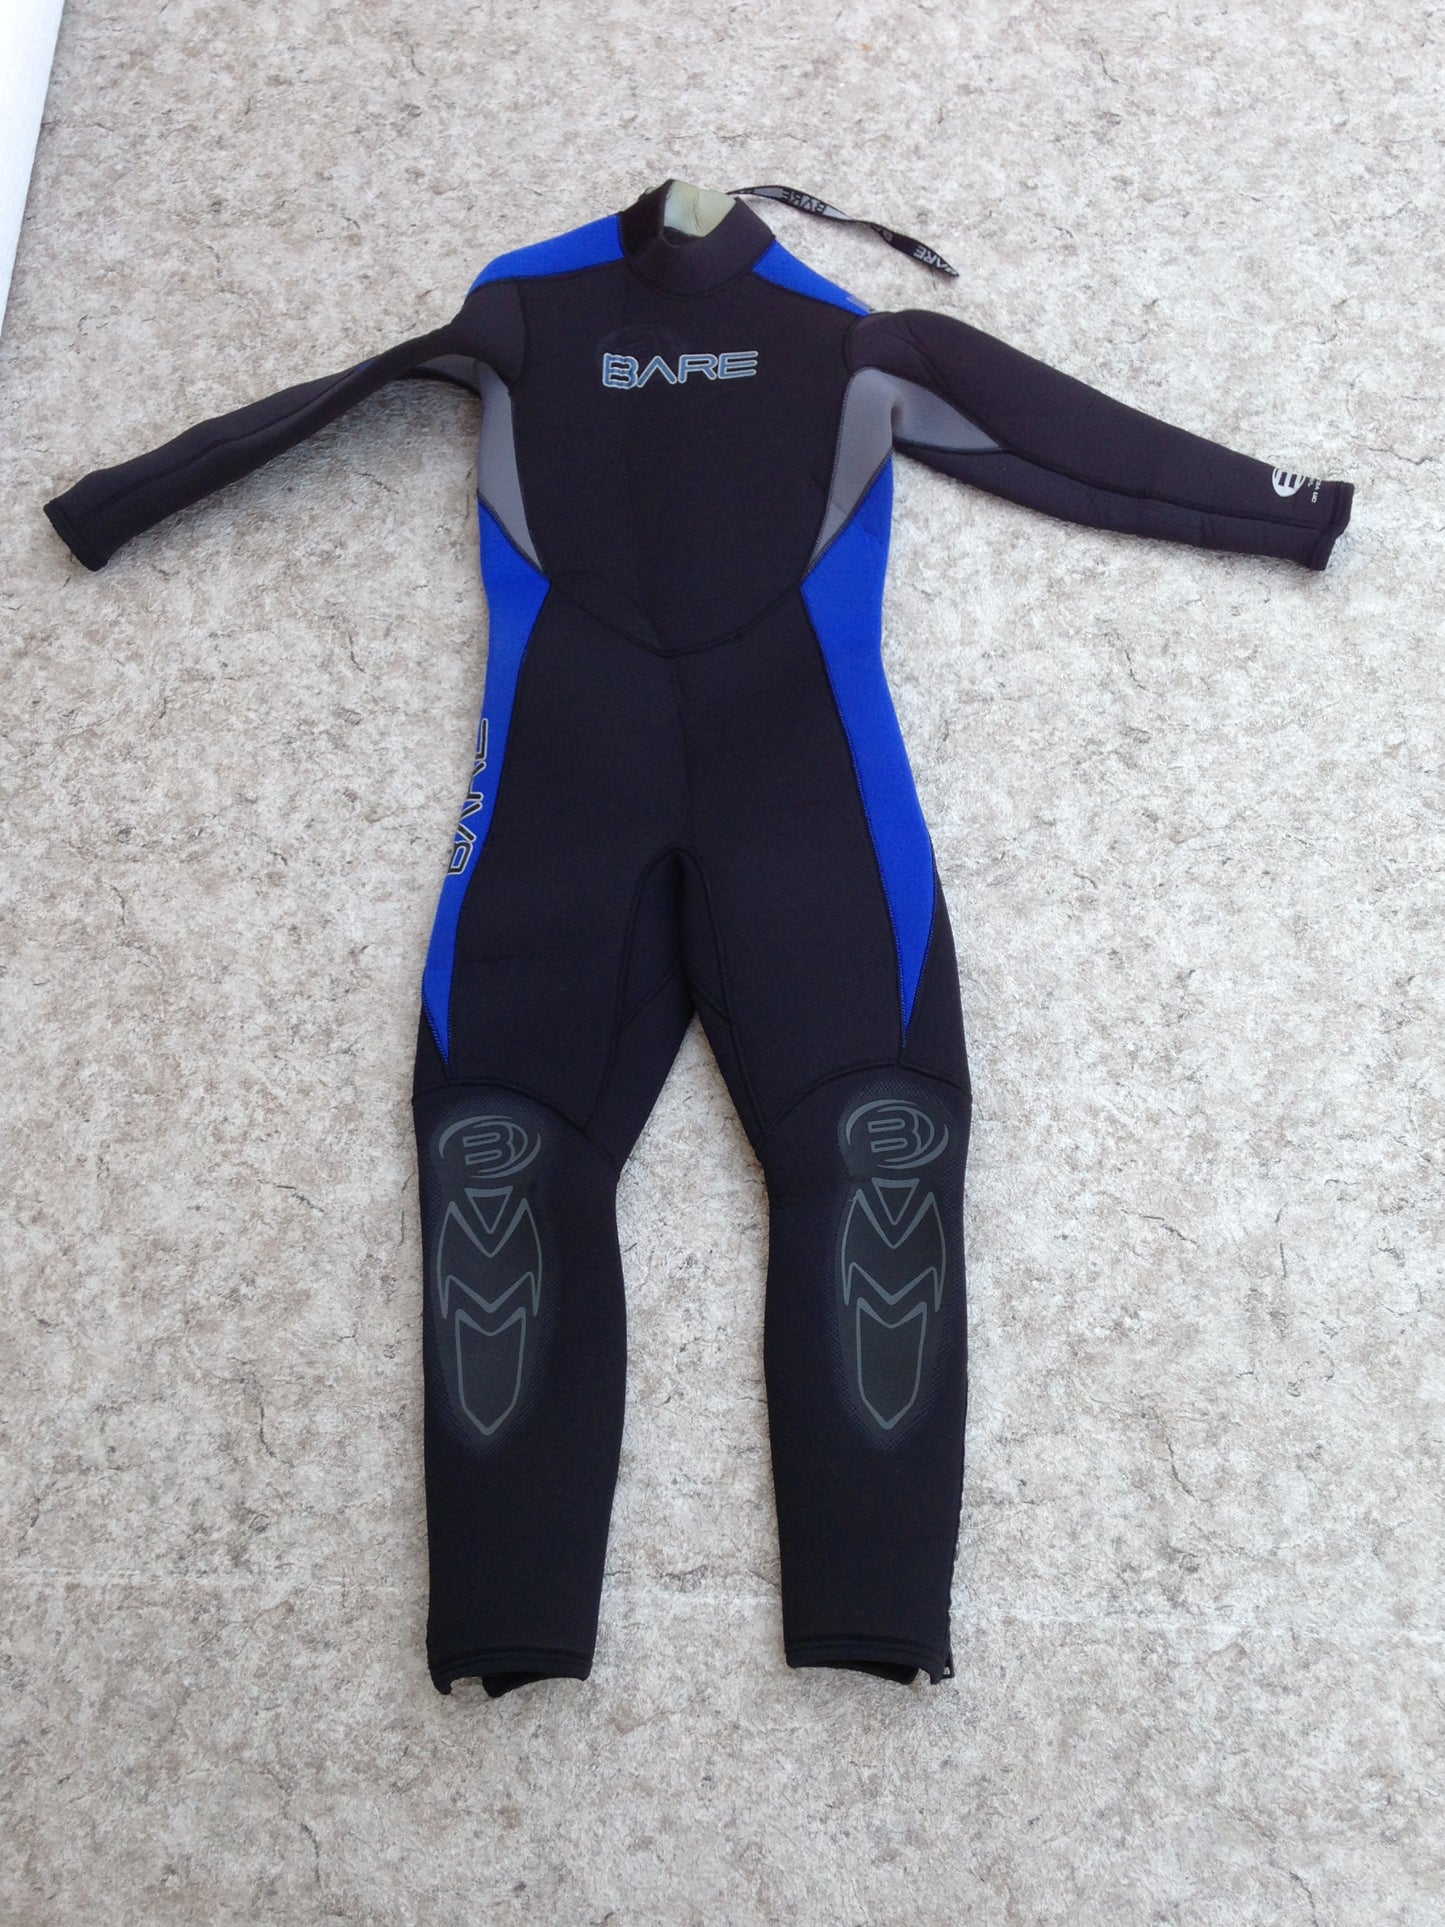 Wetsuit Child Size 10 Full Bare 4-3 mm Neoprene Black Blue Surf Ski